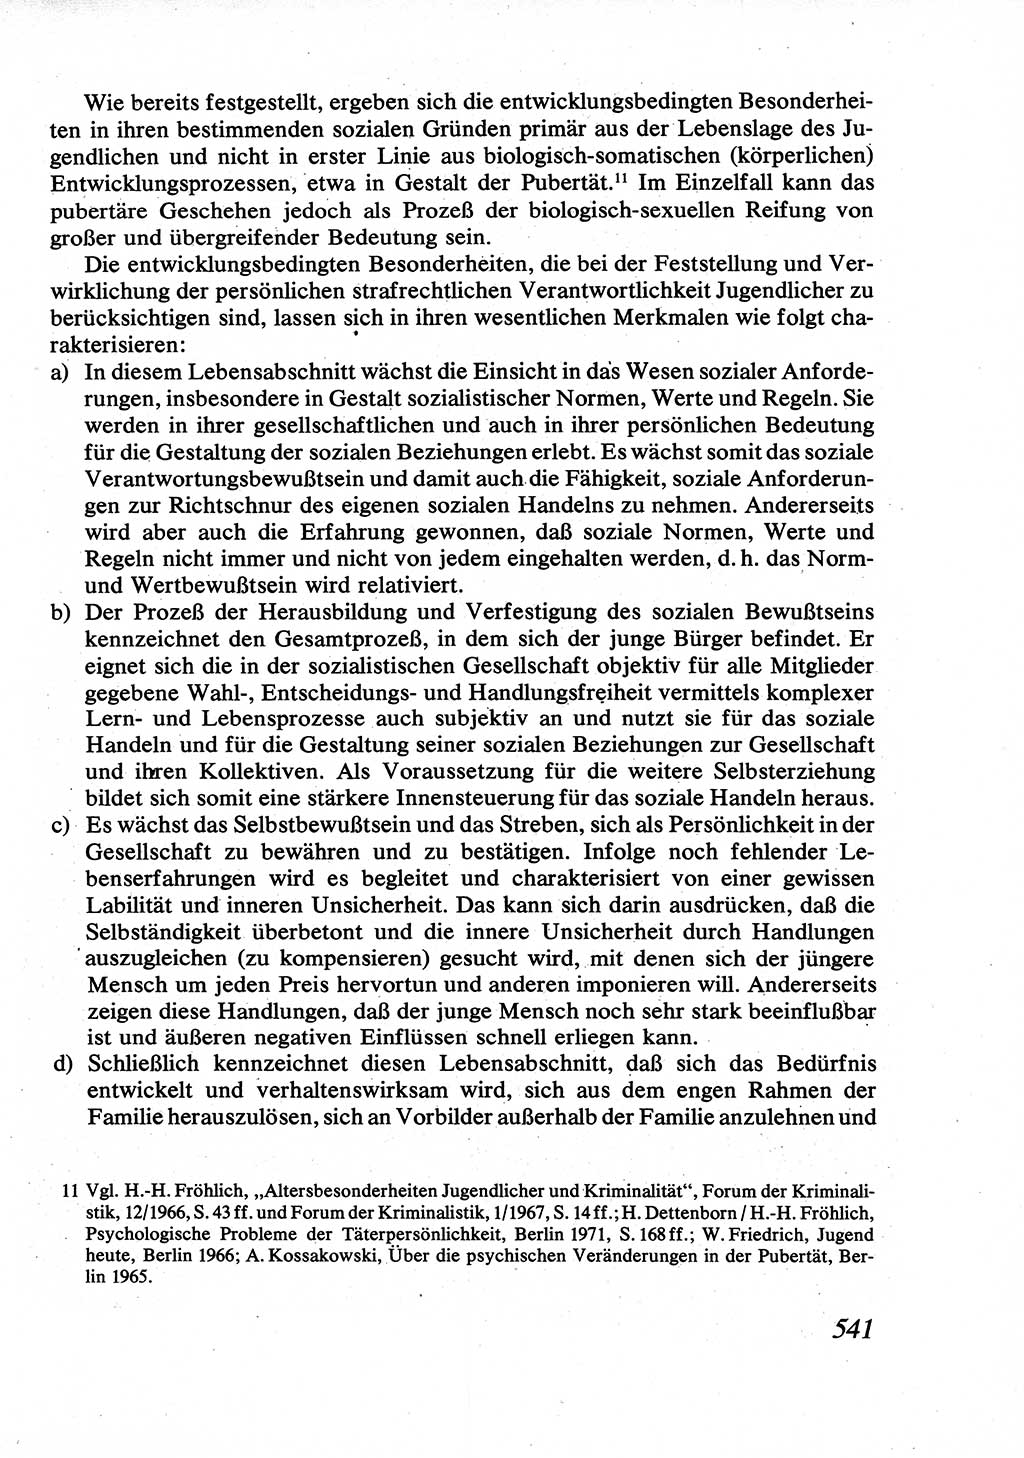 Strafrecht [Deutsche Demokratische Republik (DDR)], Allgemeiner Teil, Lehrbuch 1976, Seite 541 (Strafr. DDR AT Lb. 1976, S. 541)